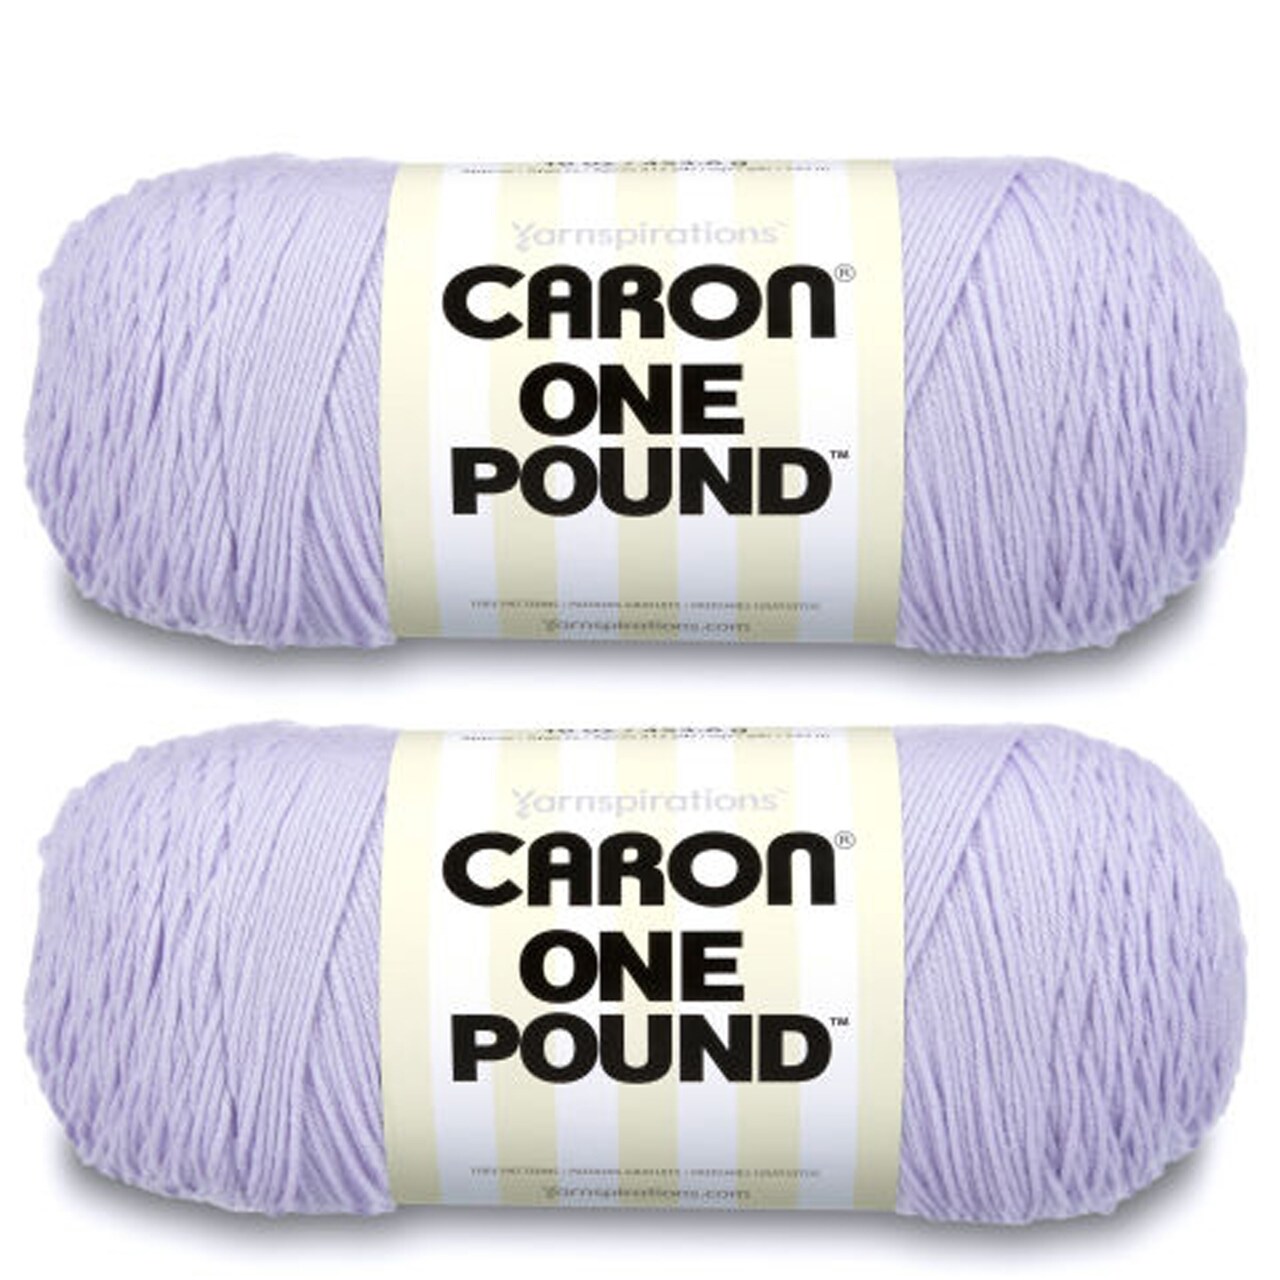 Caron One Pound Lilac Yarn - 2 Pack of 454g/16oz - Acrylic - 4 Medium  (Worsted) - 812 Yards - Knitting/Crochet